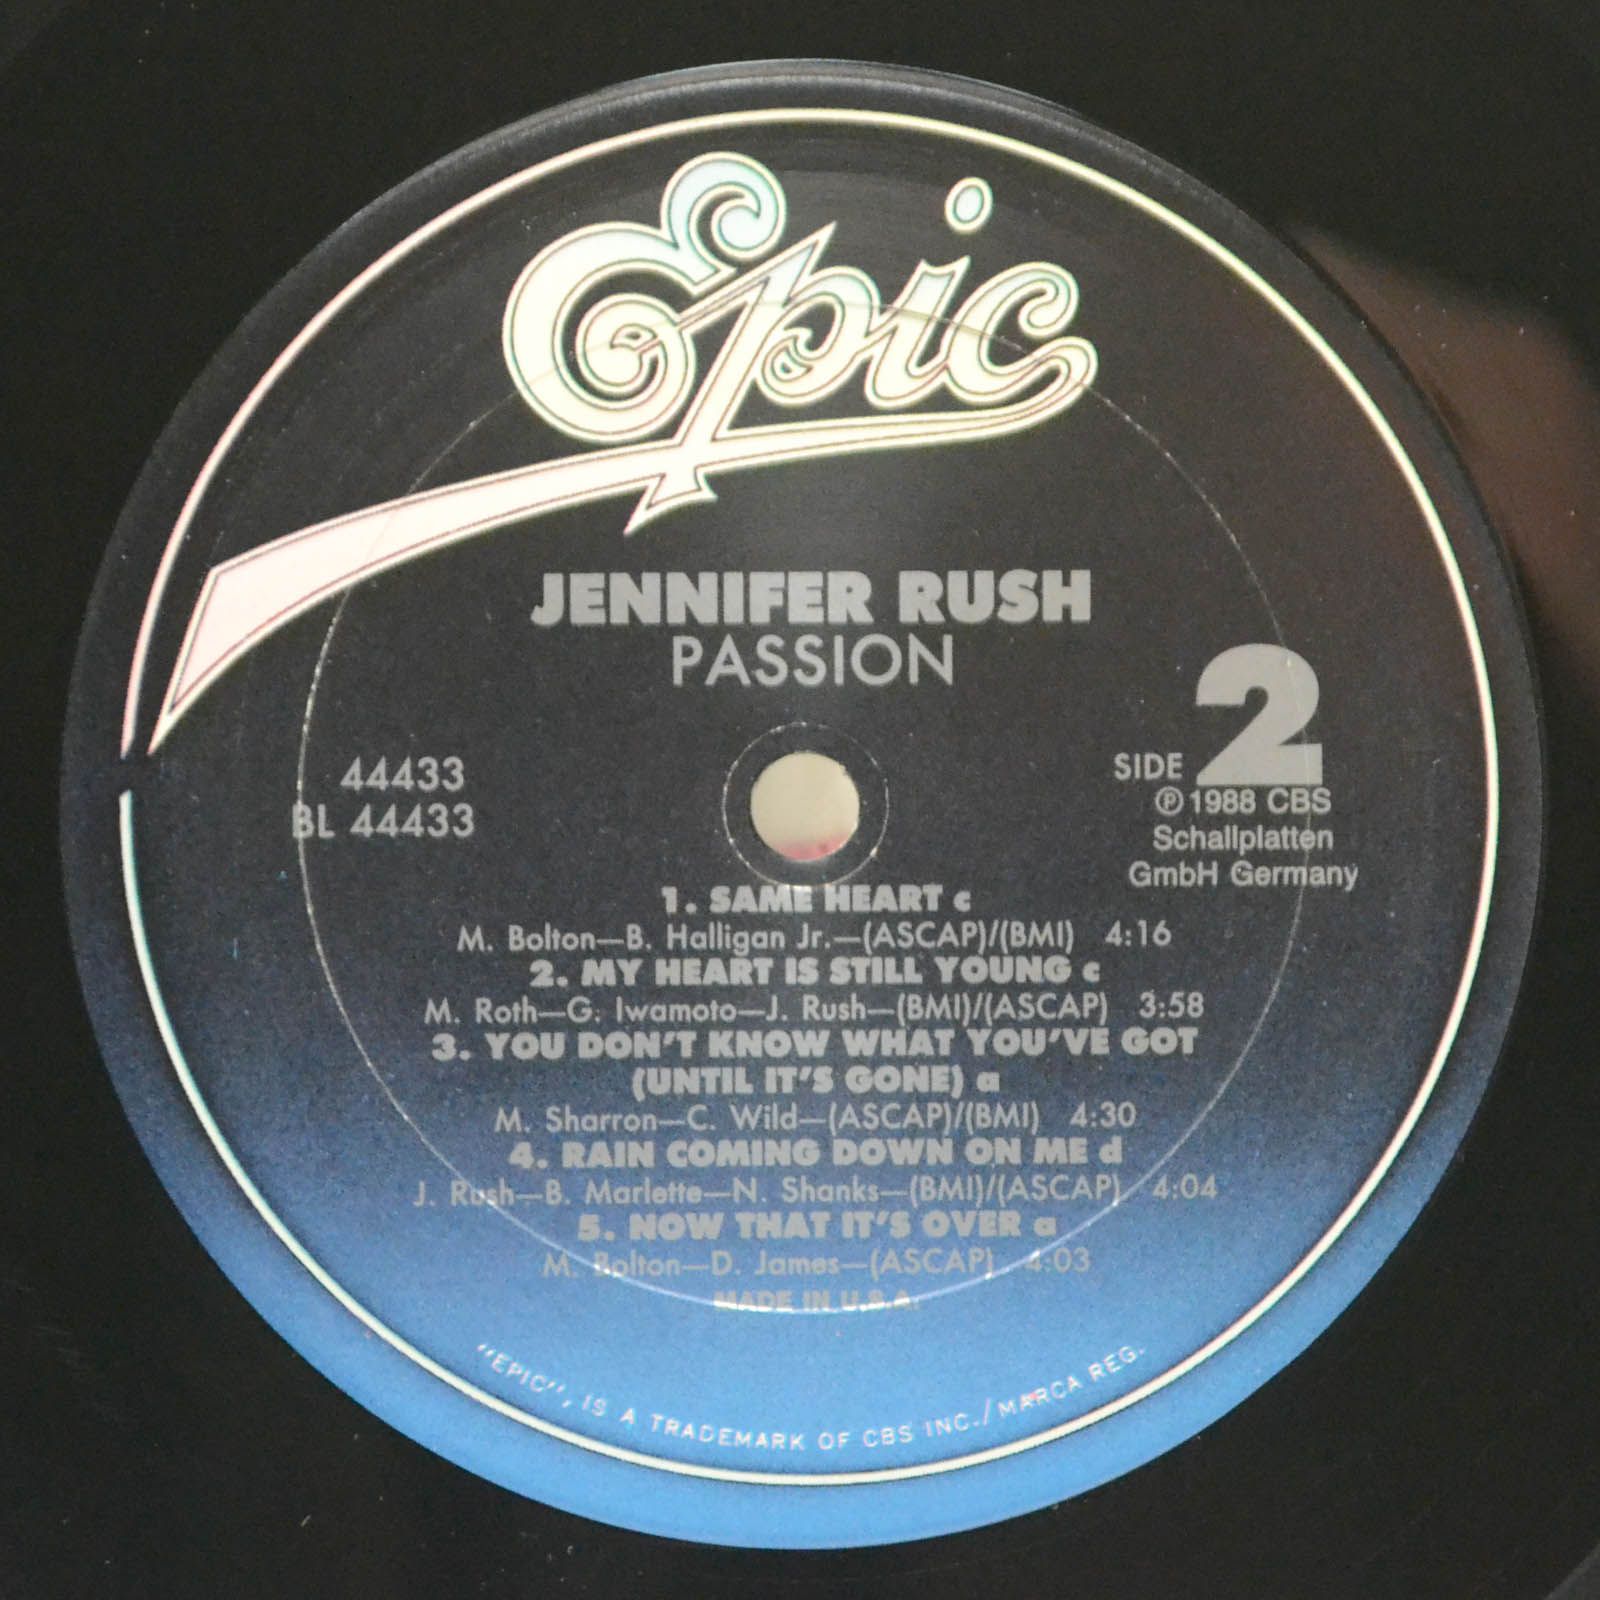 Jennifer Rush — Passion, 1988